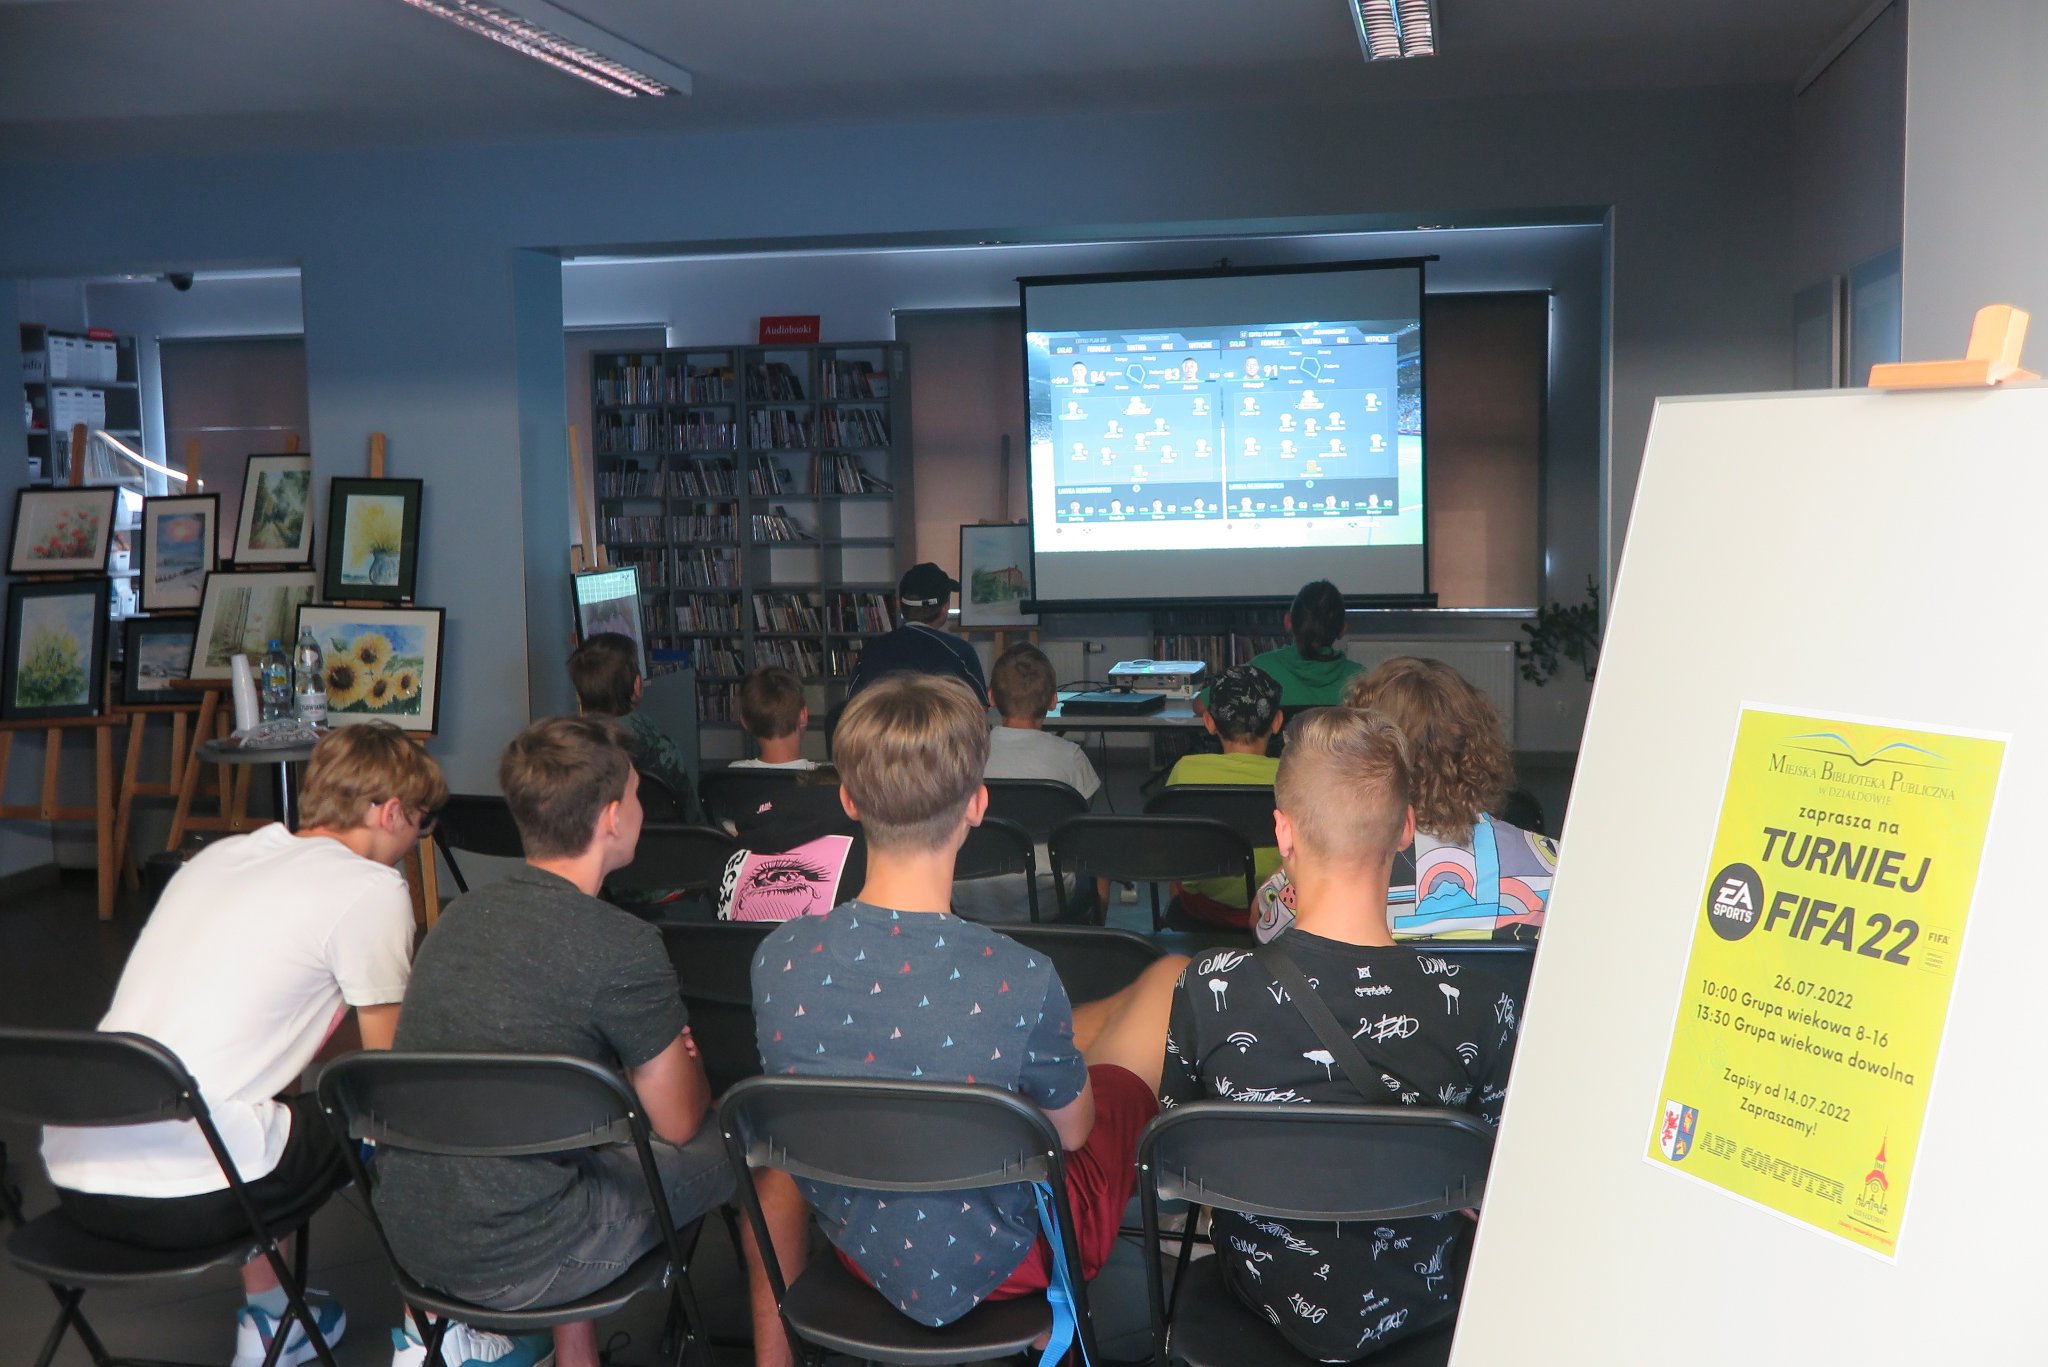 zdjęcie wykonane z tyłu na którym widać publiczność oraz ekran projektora, z prawej na sztaludze stoi plakat turnieju Fifa 22